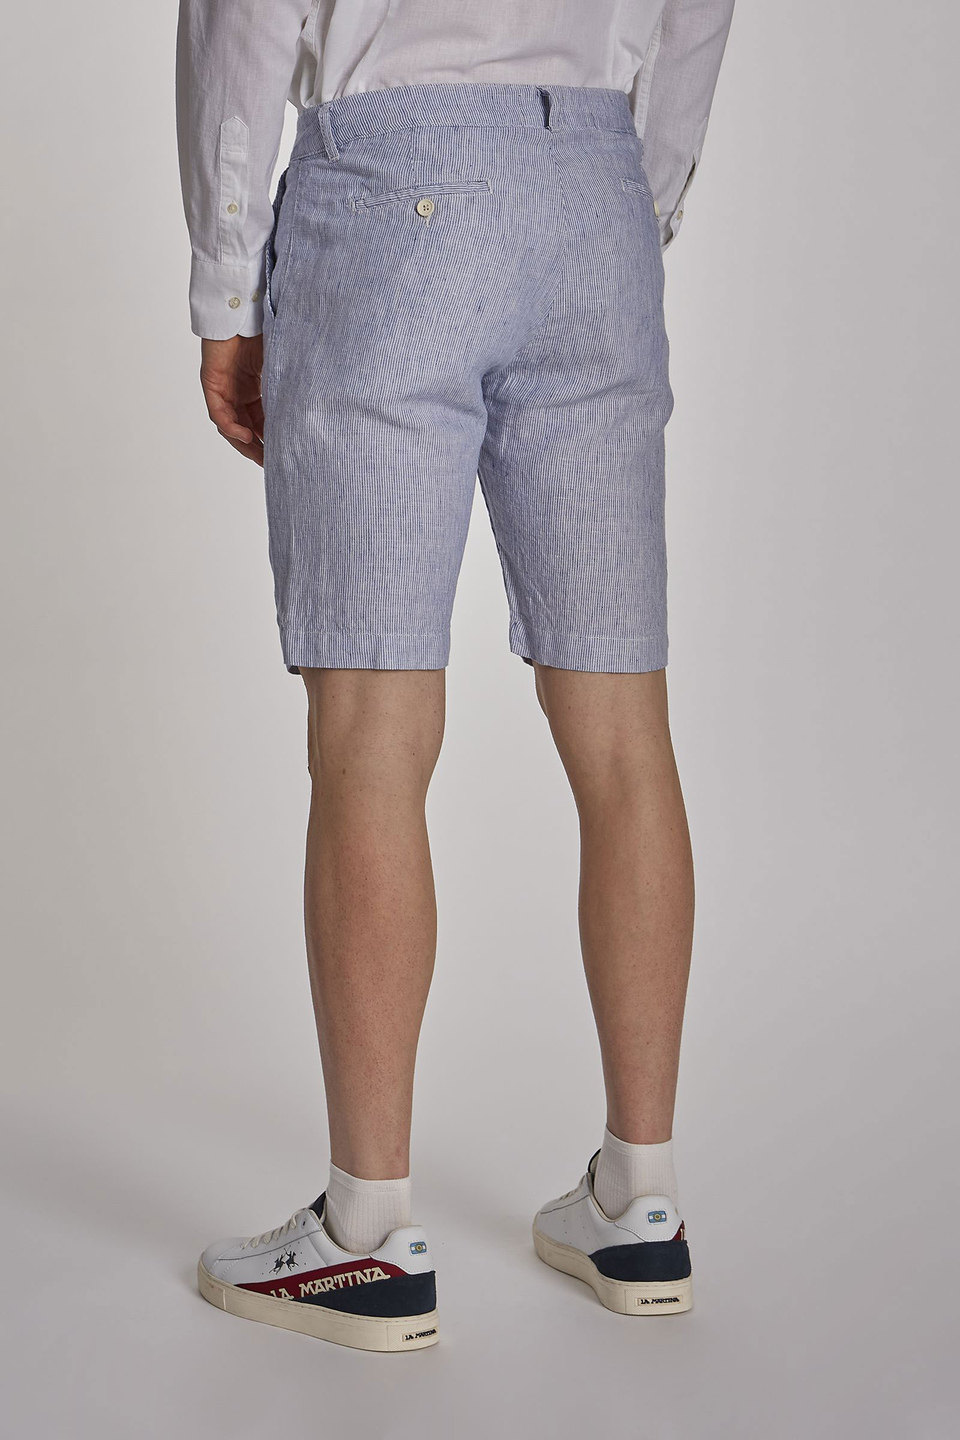 Men's regular-fit linen Bermuda shorts | La Martina - Official Online Shop